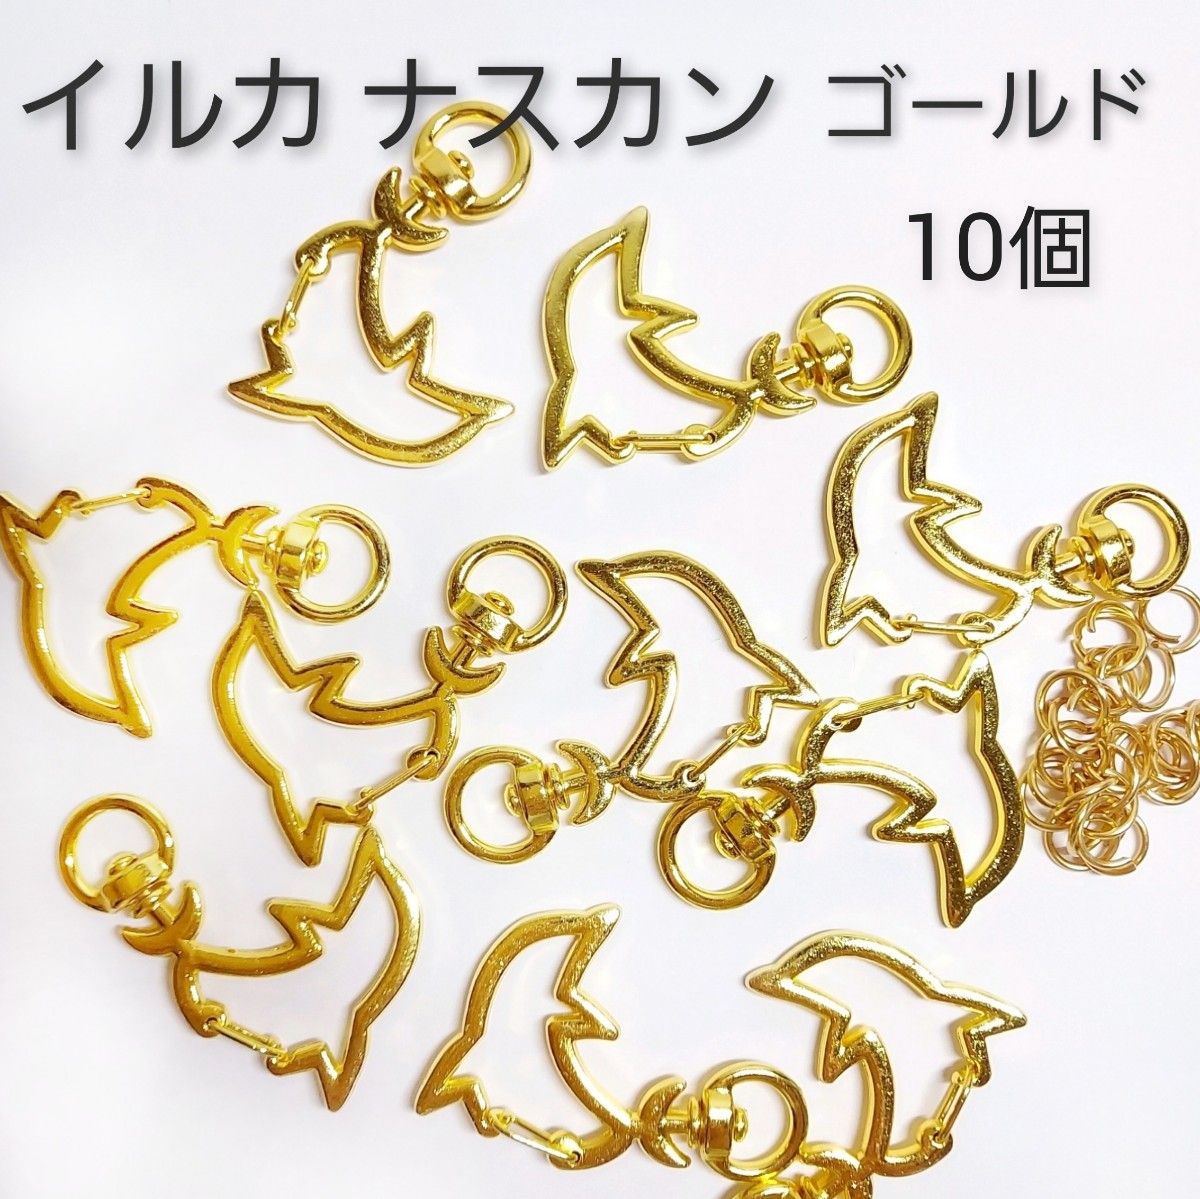 現品限り☆回転式  イルカ 型 ナスカン  ゴールド  10個  丸カン付き  ハンドメイド  レジン